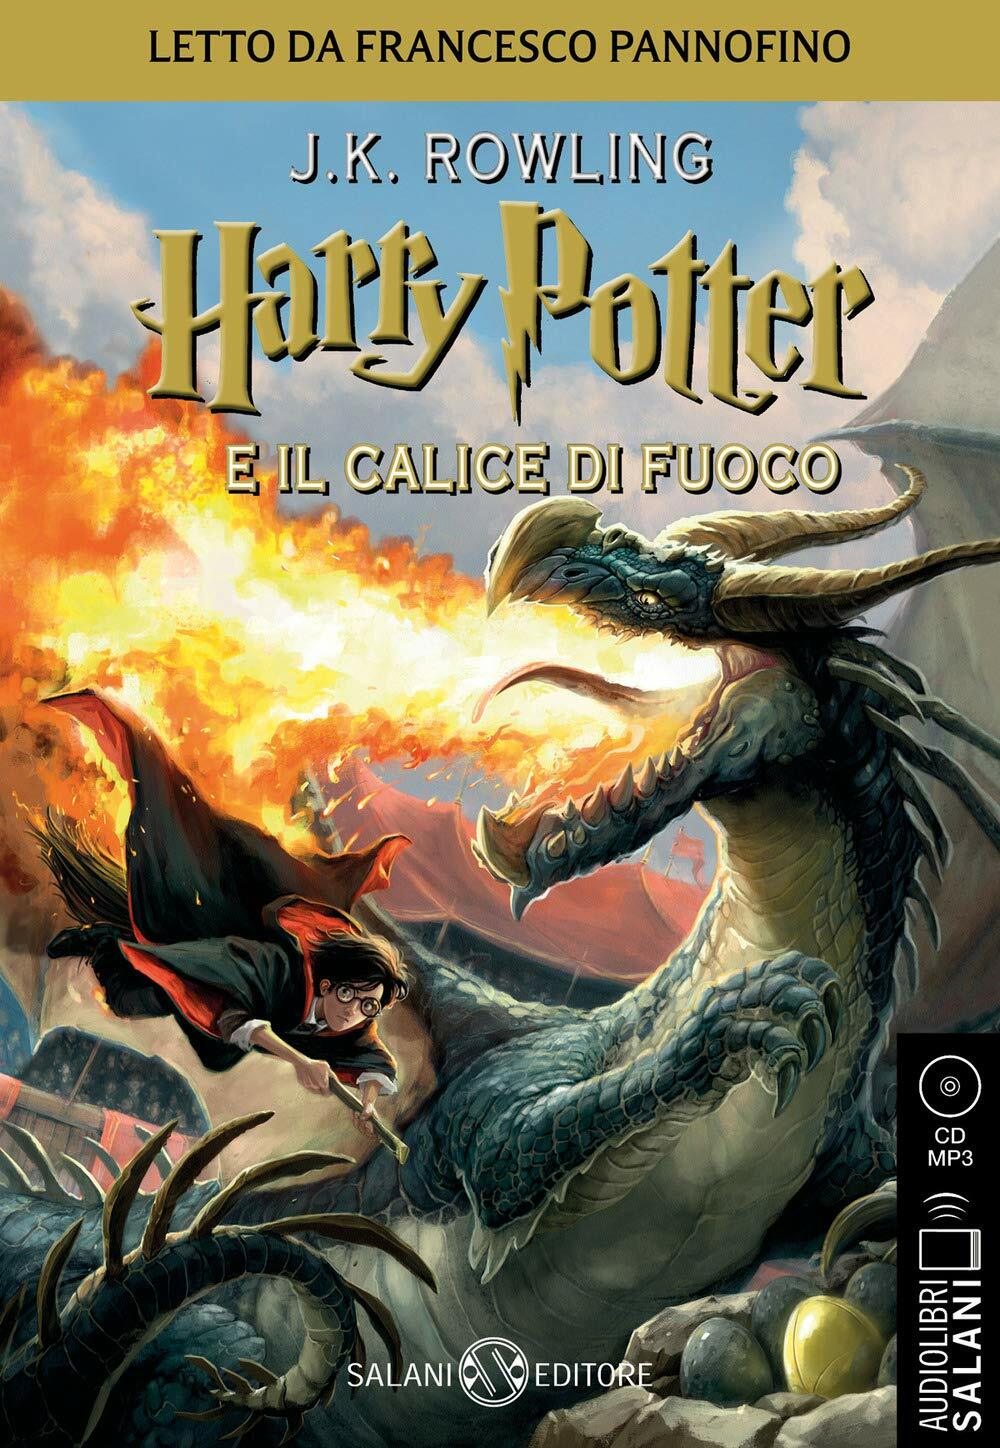 Harry Potter e il Calice di Fuoco - Audiolibro CD MP3: Vol.4 (Audio CD - Audiolibro)